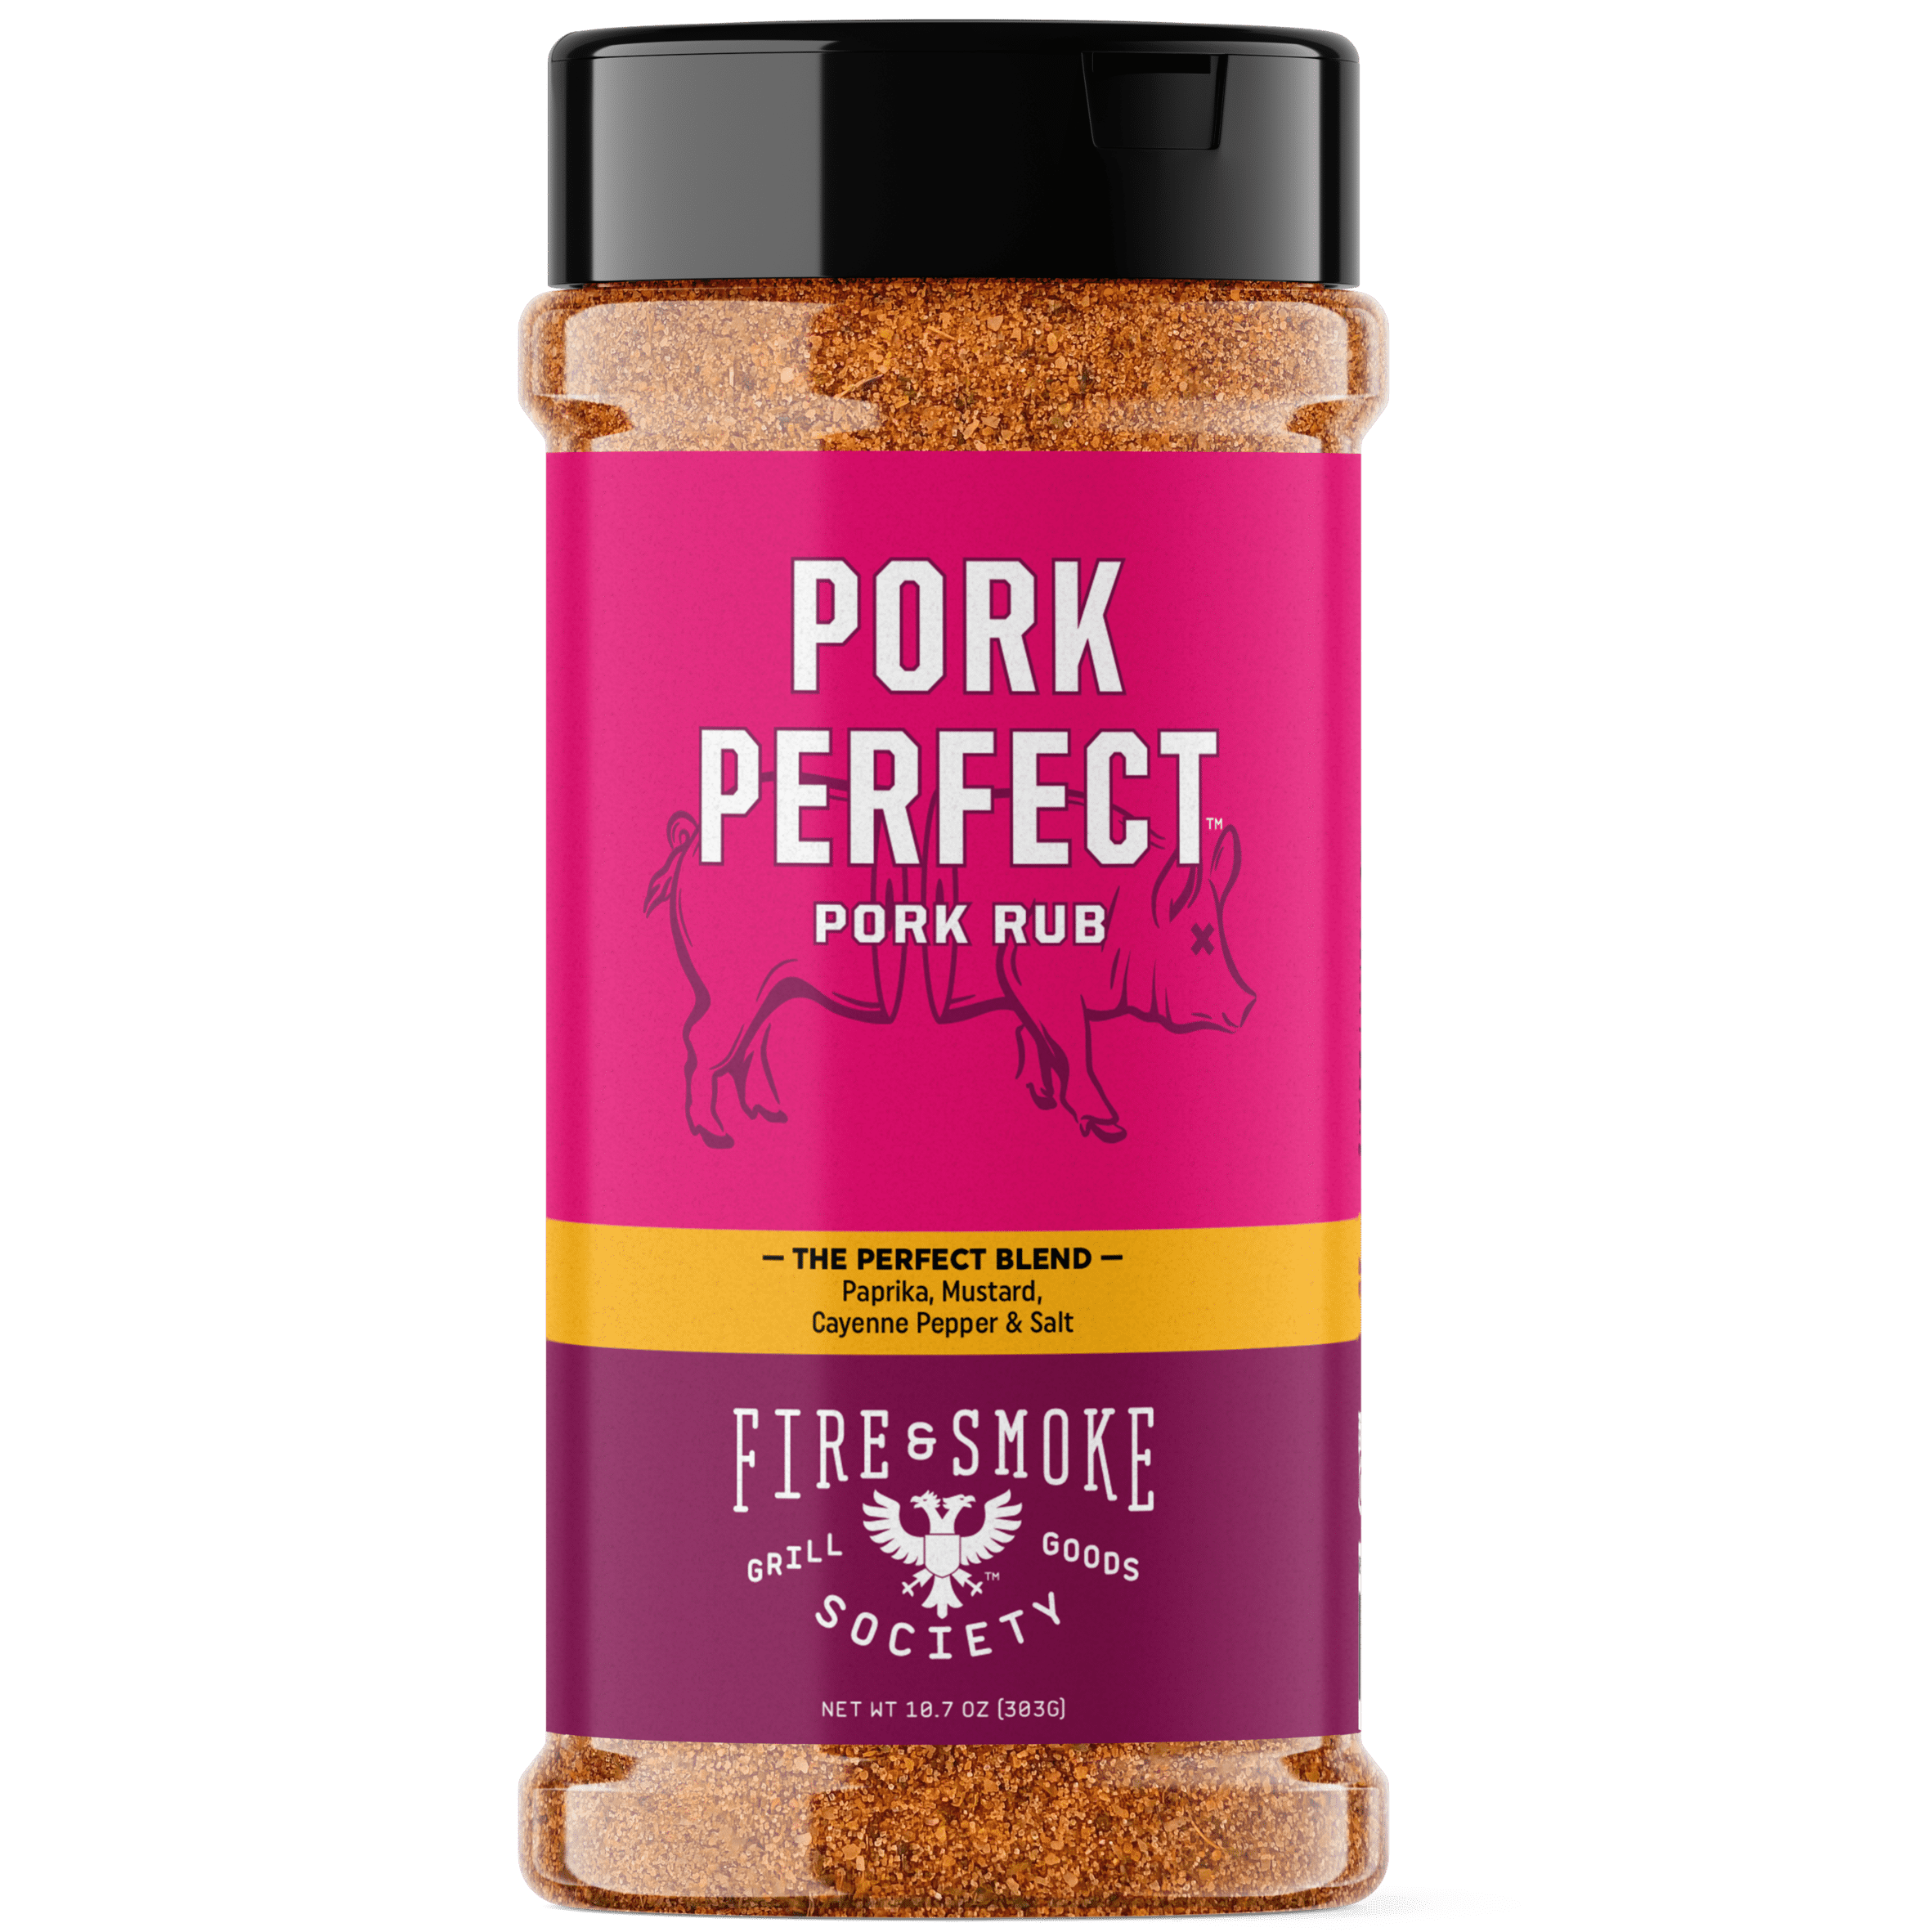 Fire & Smoke Society Pork Perfect Pork Spice Blend, 10.7 ounce